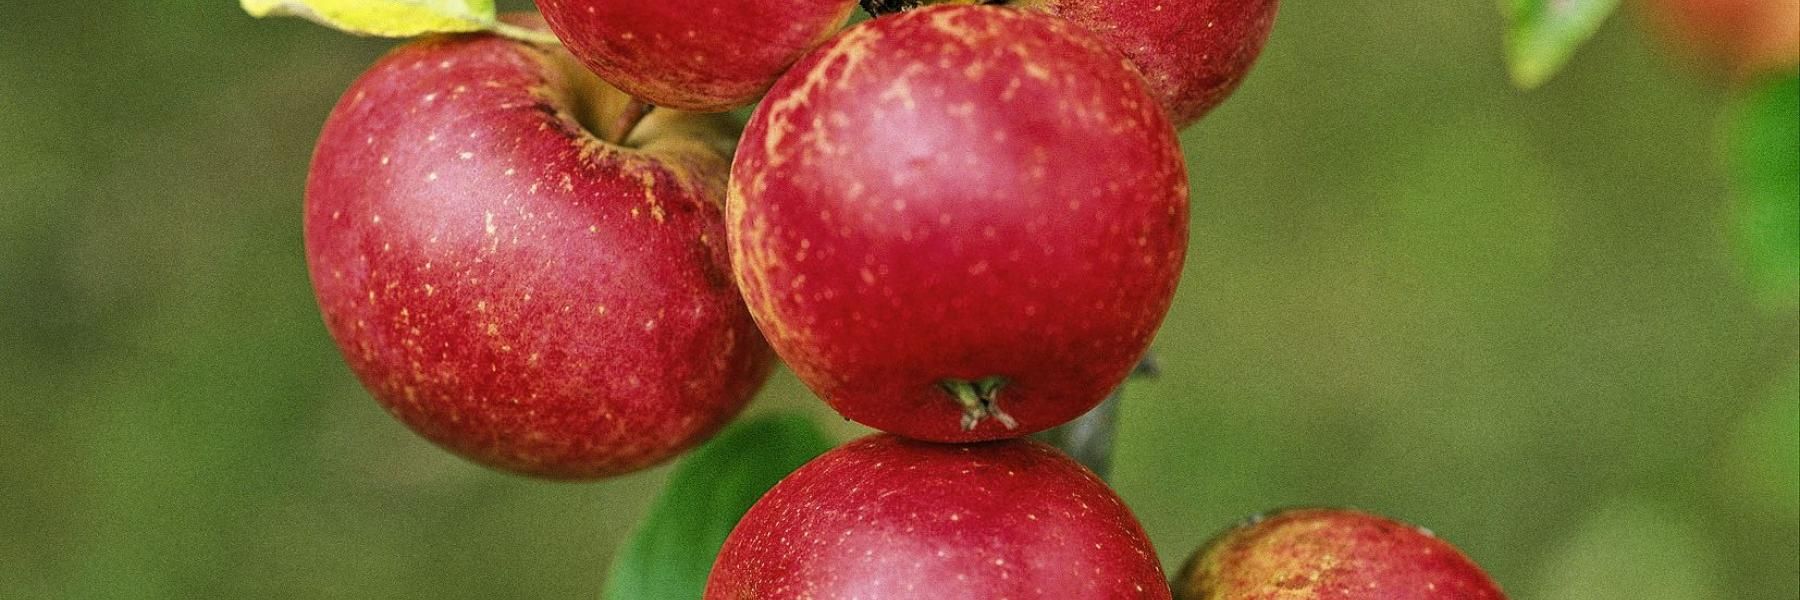 frugttræer_æbler